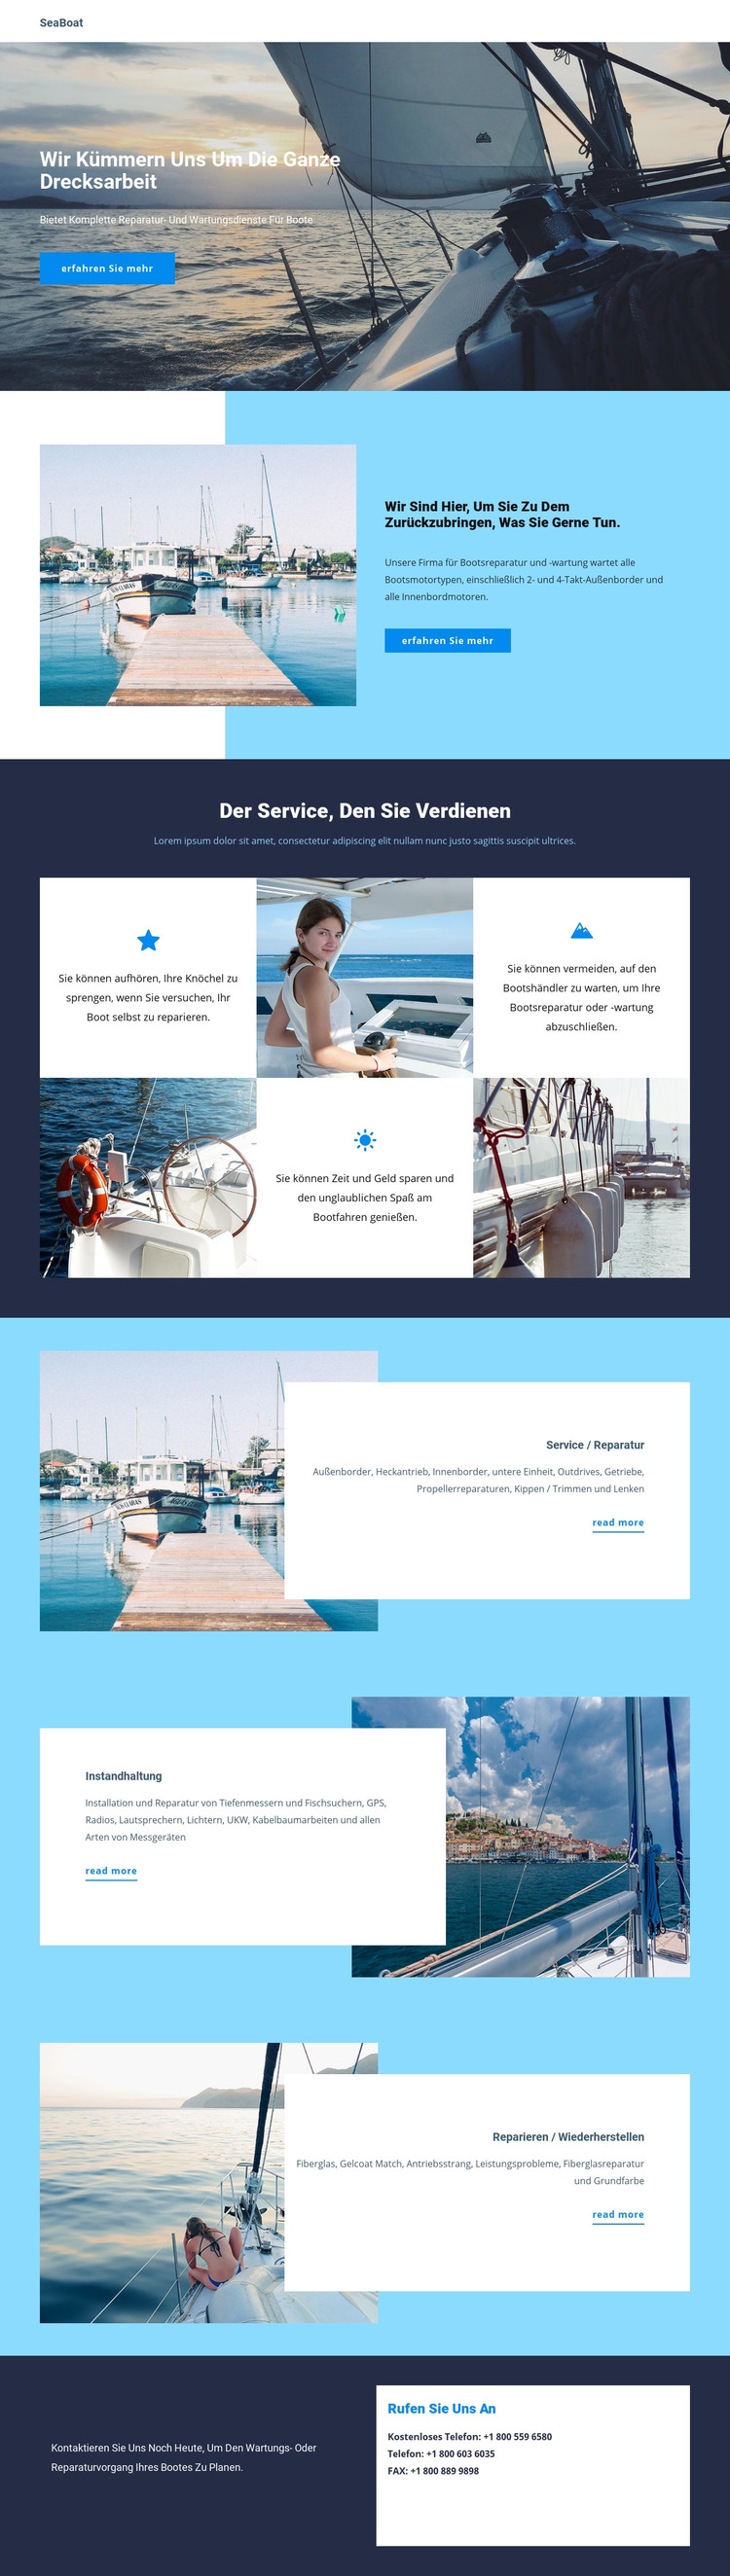 Reisen Sie mit dem Seeboot HTML-Vorlage